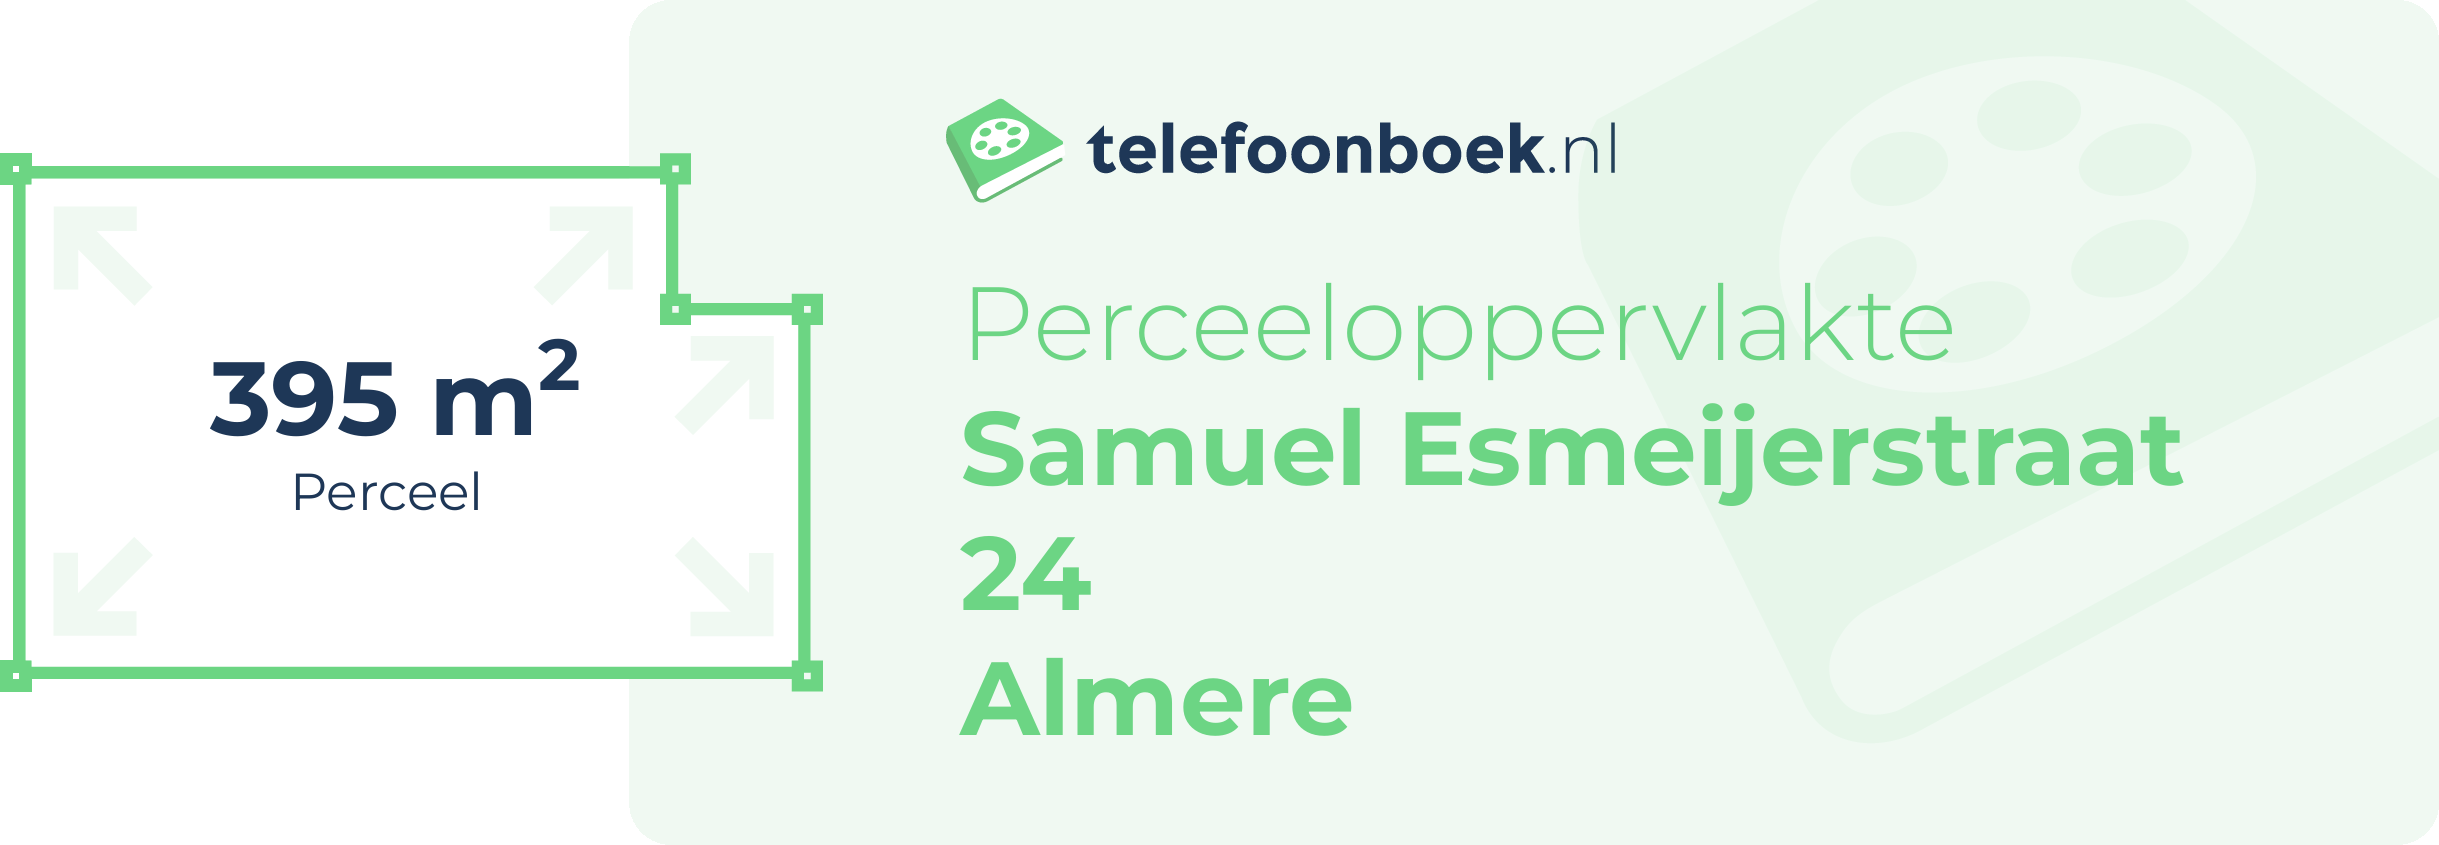 Perceeloppervlakte Samuel Esmeijerstraat 24 Almere